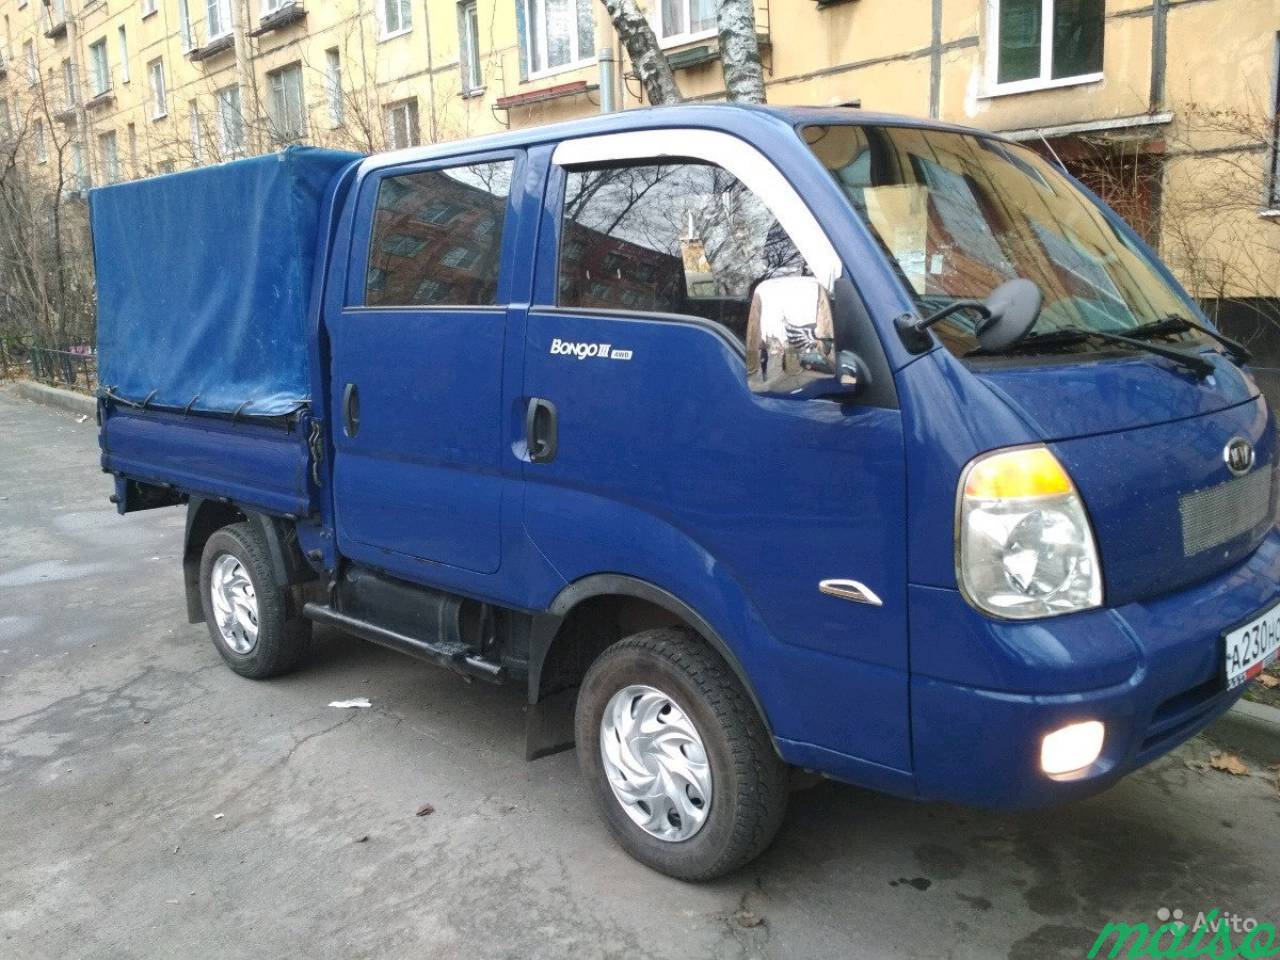 Продам грузовик Кия Бонго в Санкт-Петербурге. Фото 9